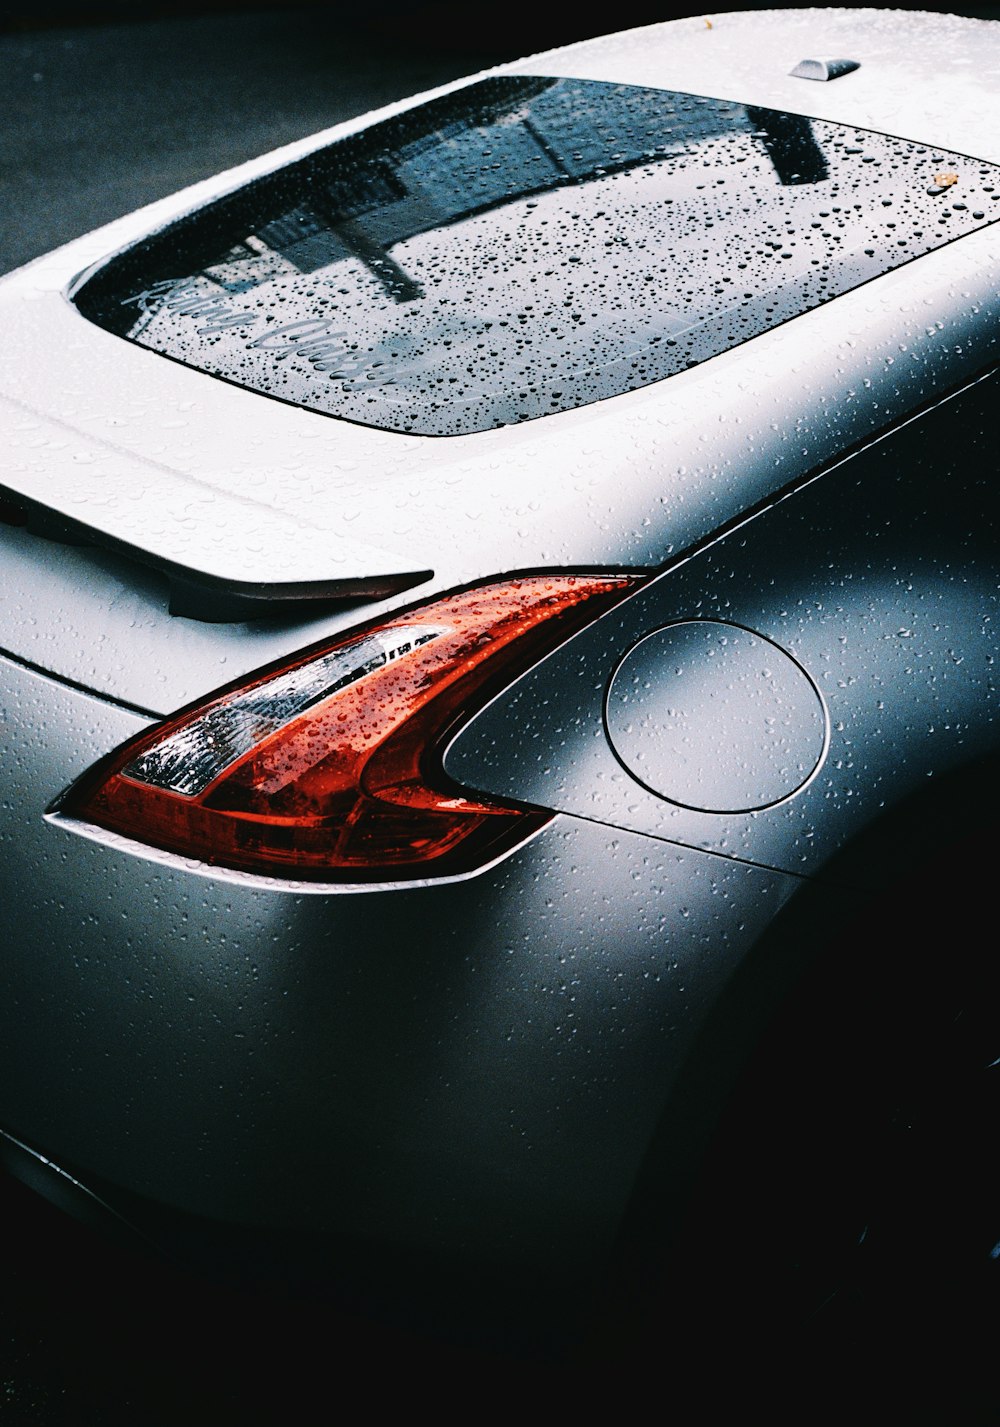 a close up of a car